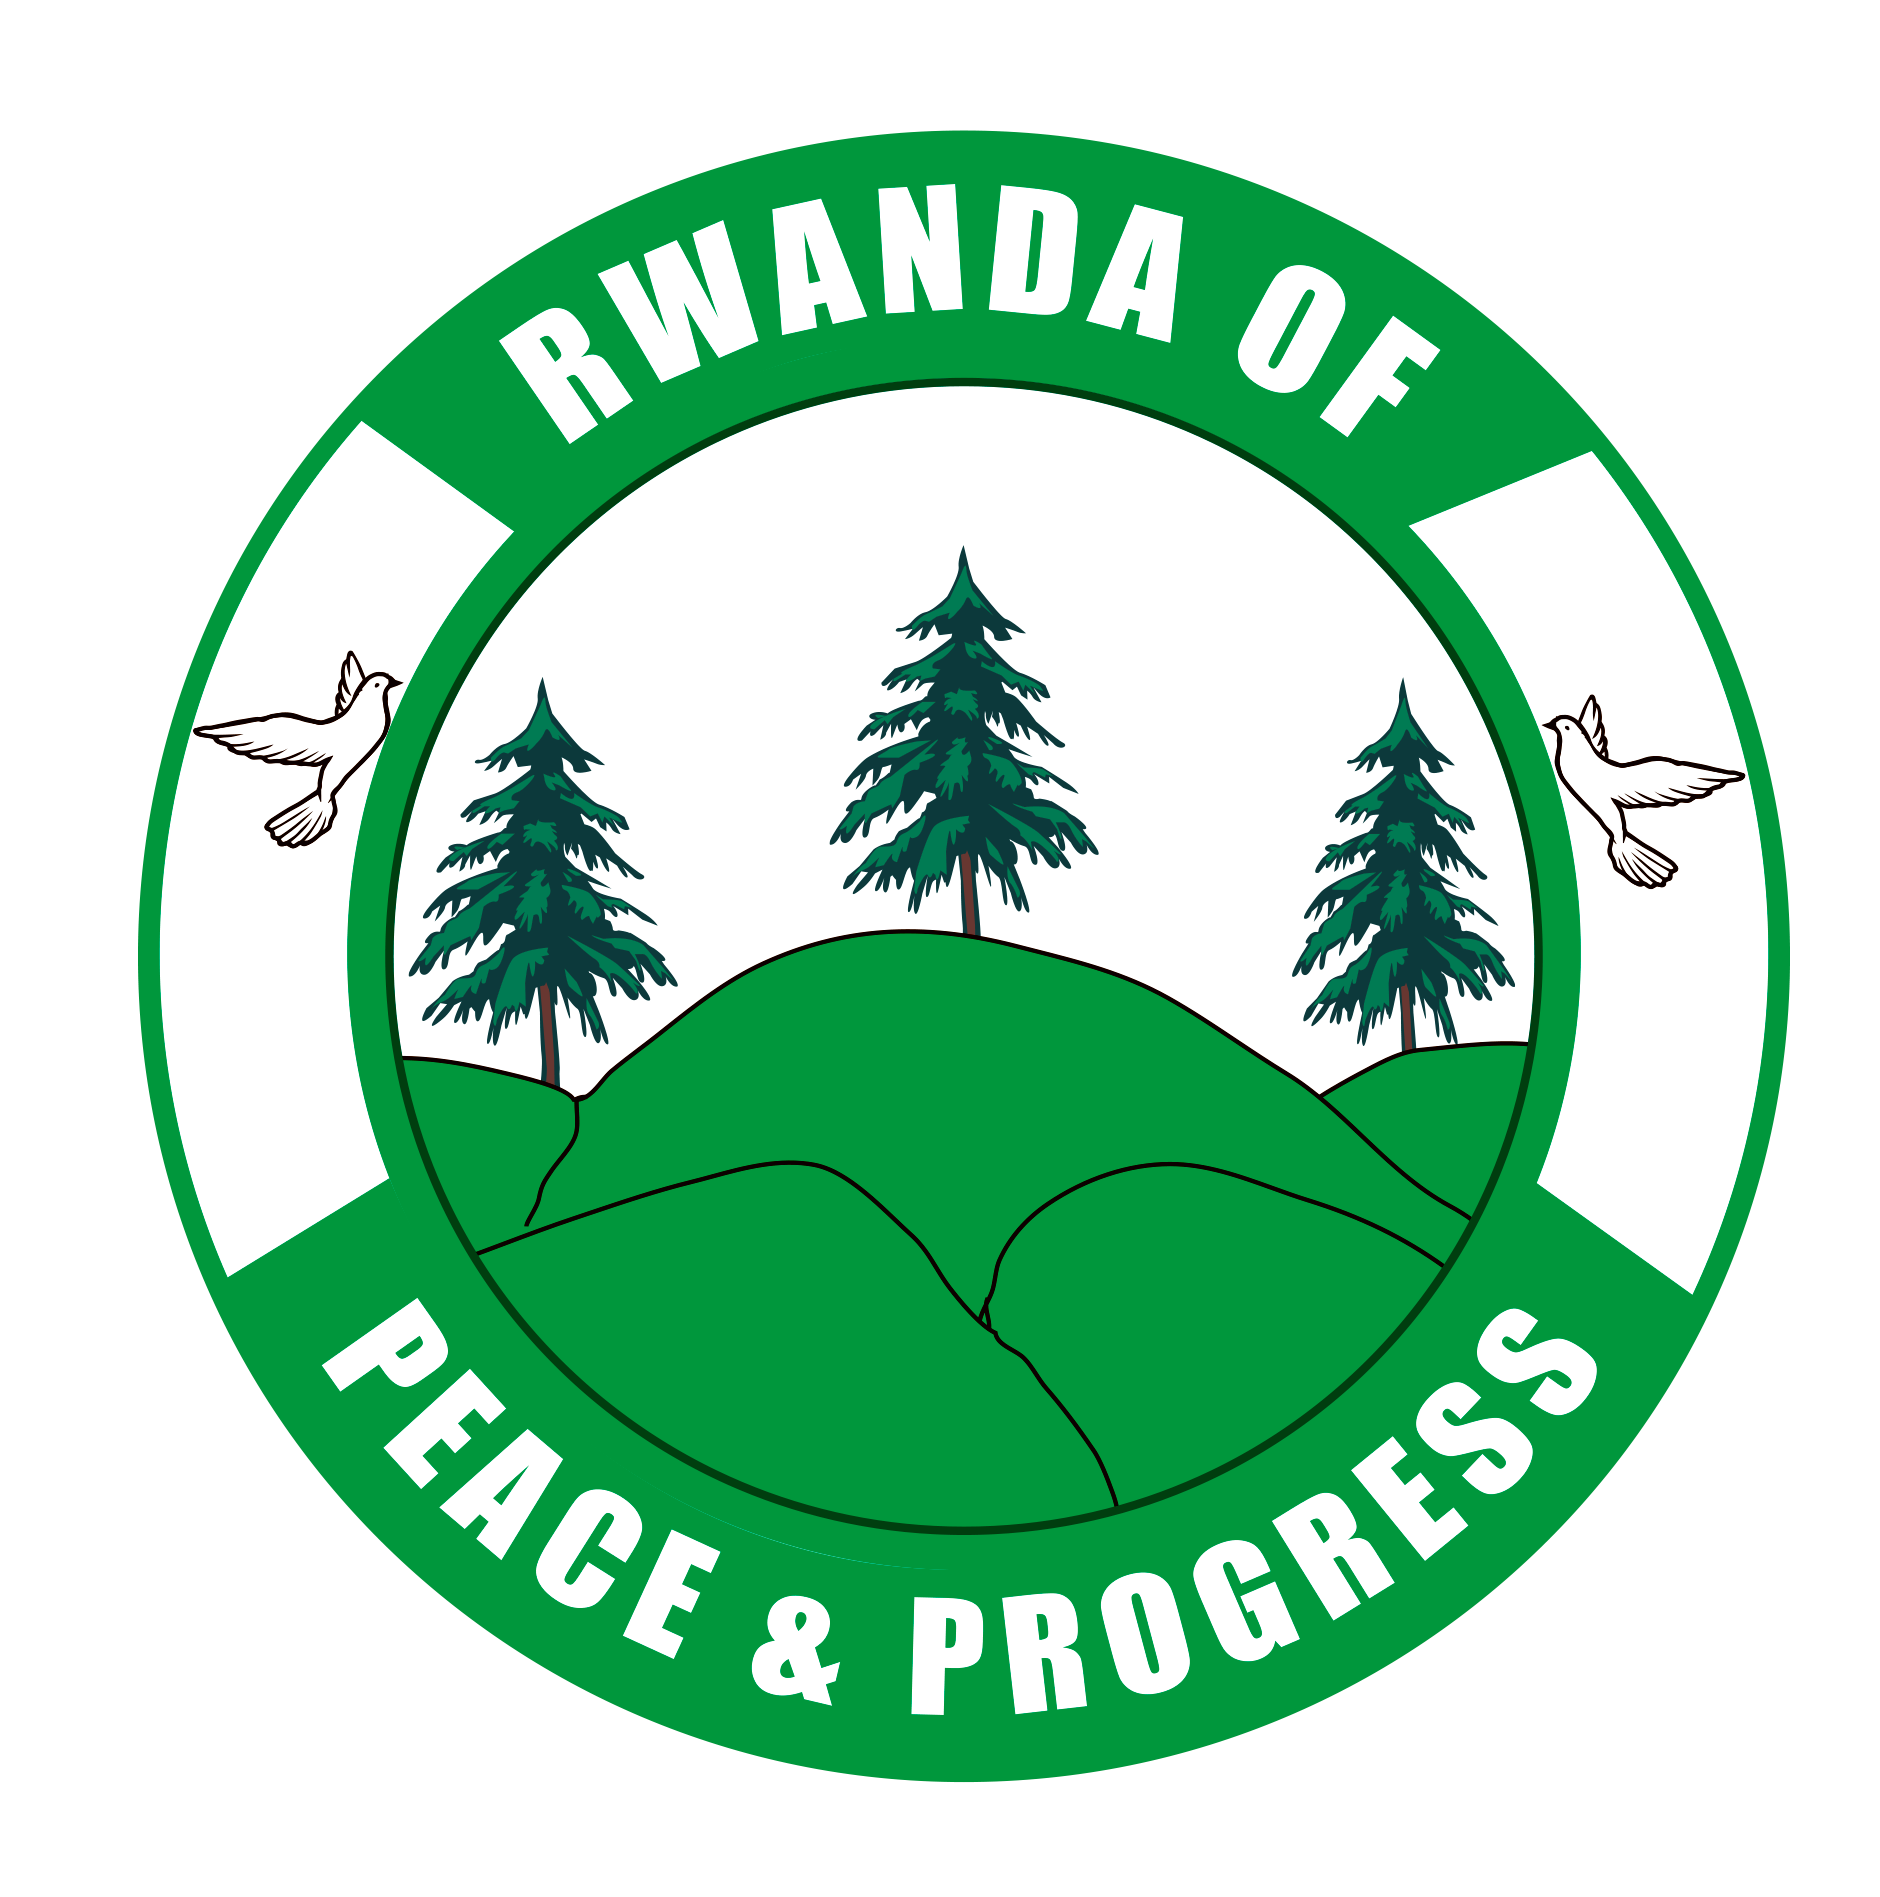 RWANDA OF PEACE AND PROGRESS